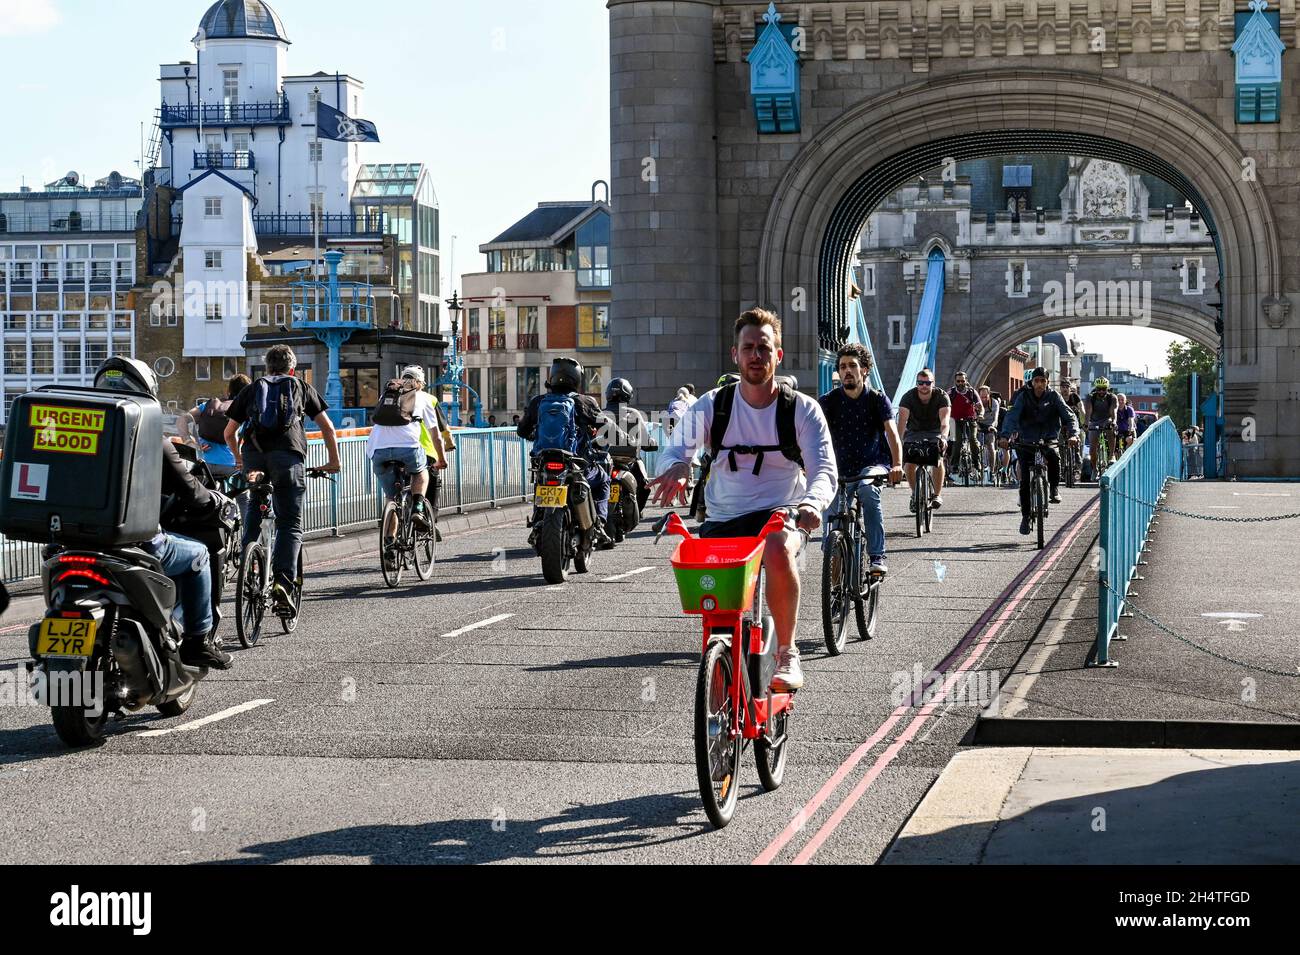 London, England - August 2021: Menschen, die über die Tower Bridge fahren und mit Motorrädern fahren Stockfoto